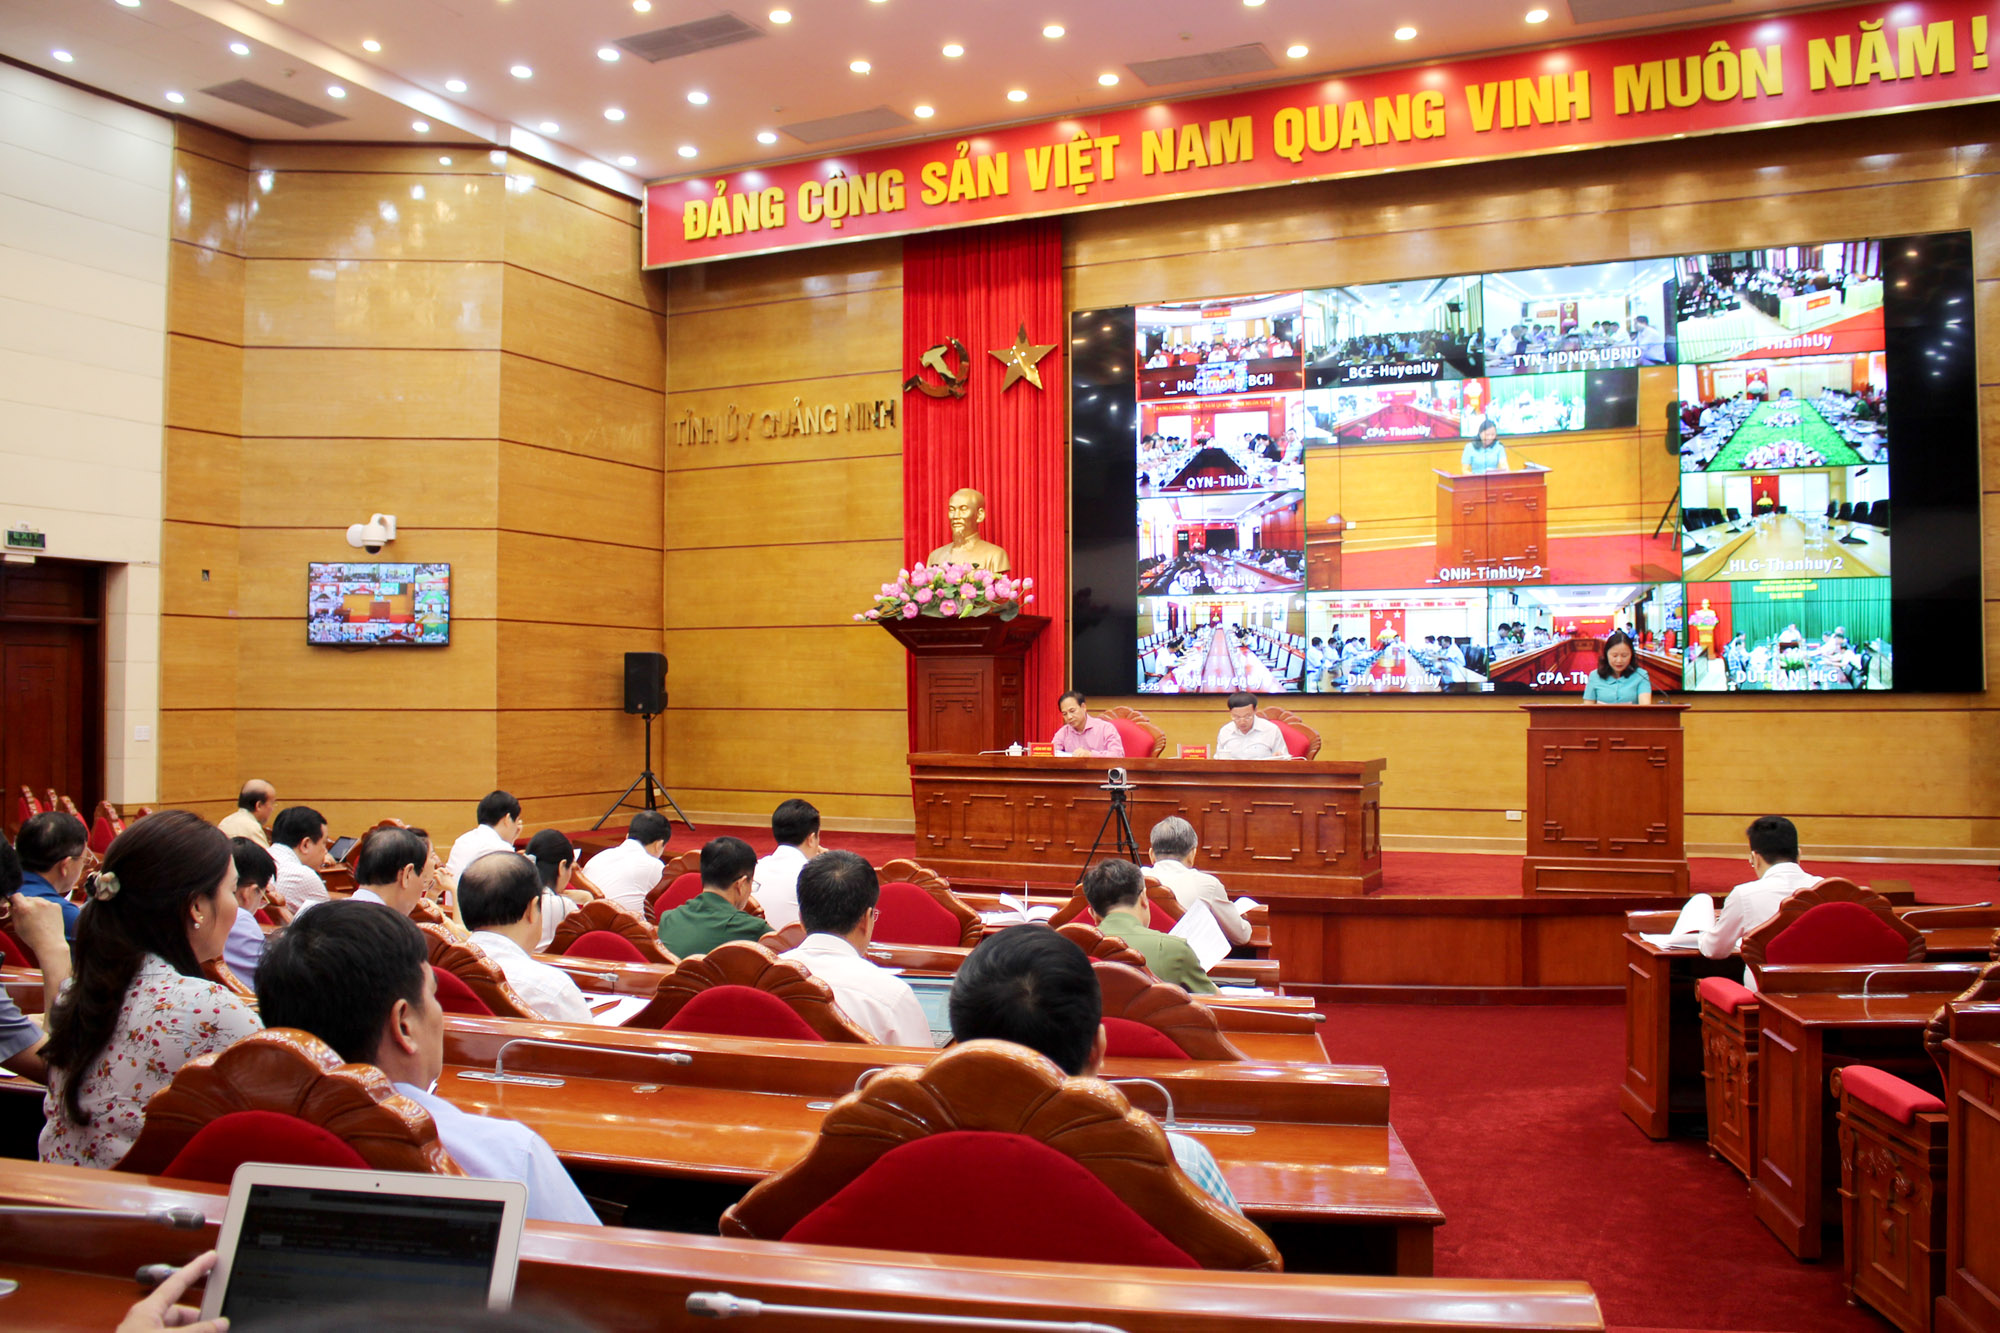 Hội nghị được truyền hình trực tuyến tới 192 điểm cầu trong toàn tỉnh.